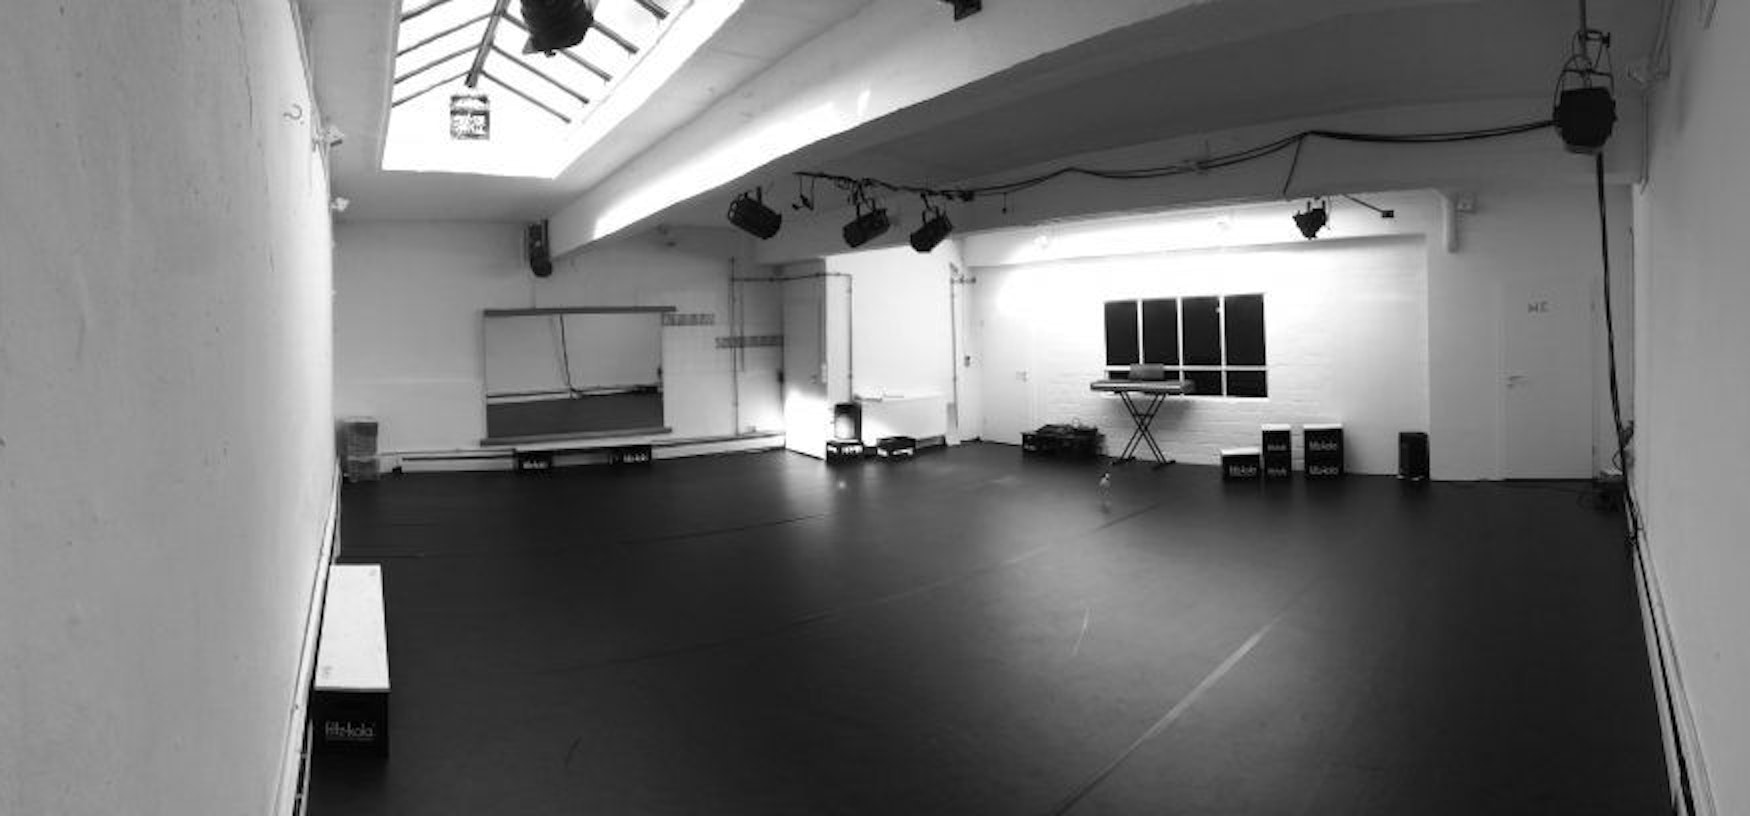 Das Studio 11 in Köln Ehrenfeld, zu sehen der Bühnenraum.